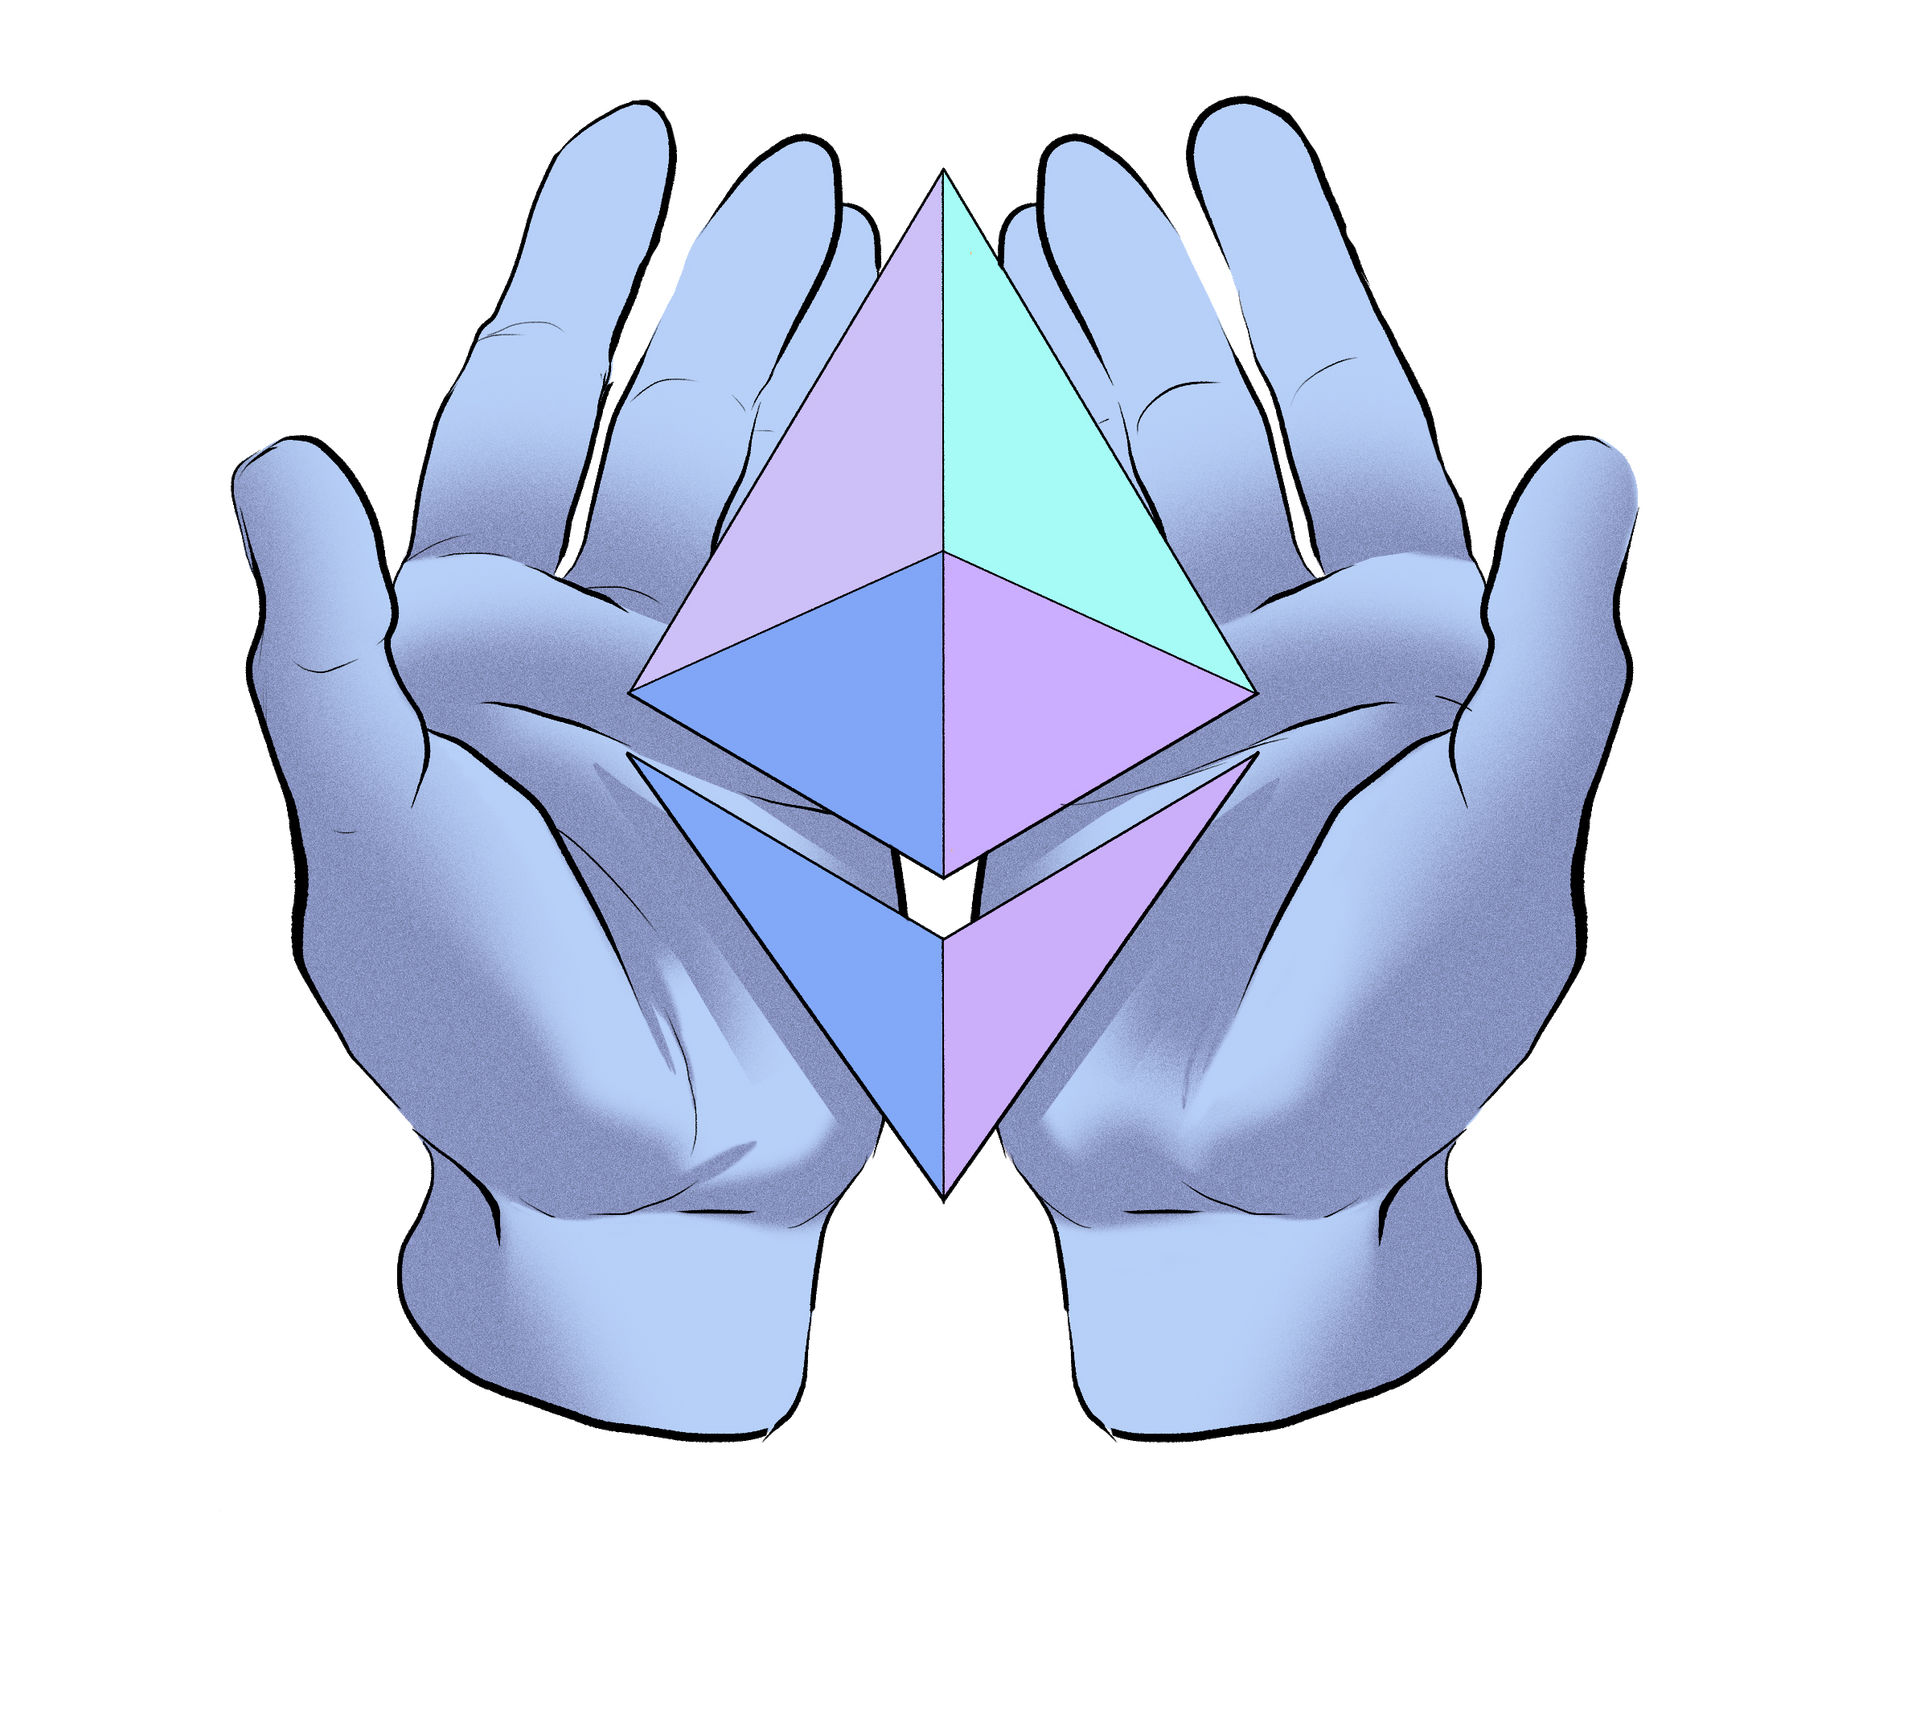 Ilustrácia rúk ponúkajúcich symbol Etherea.